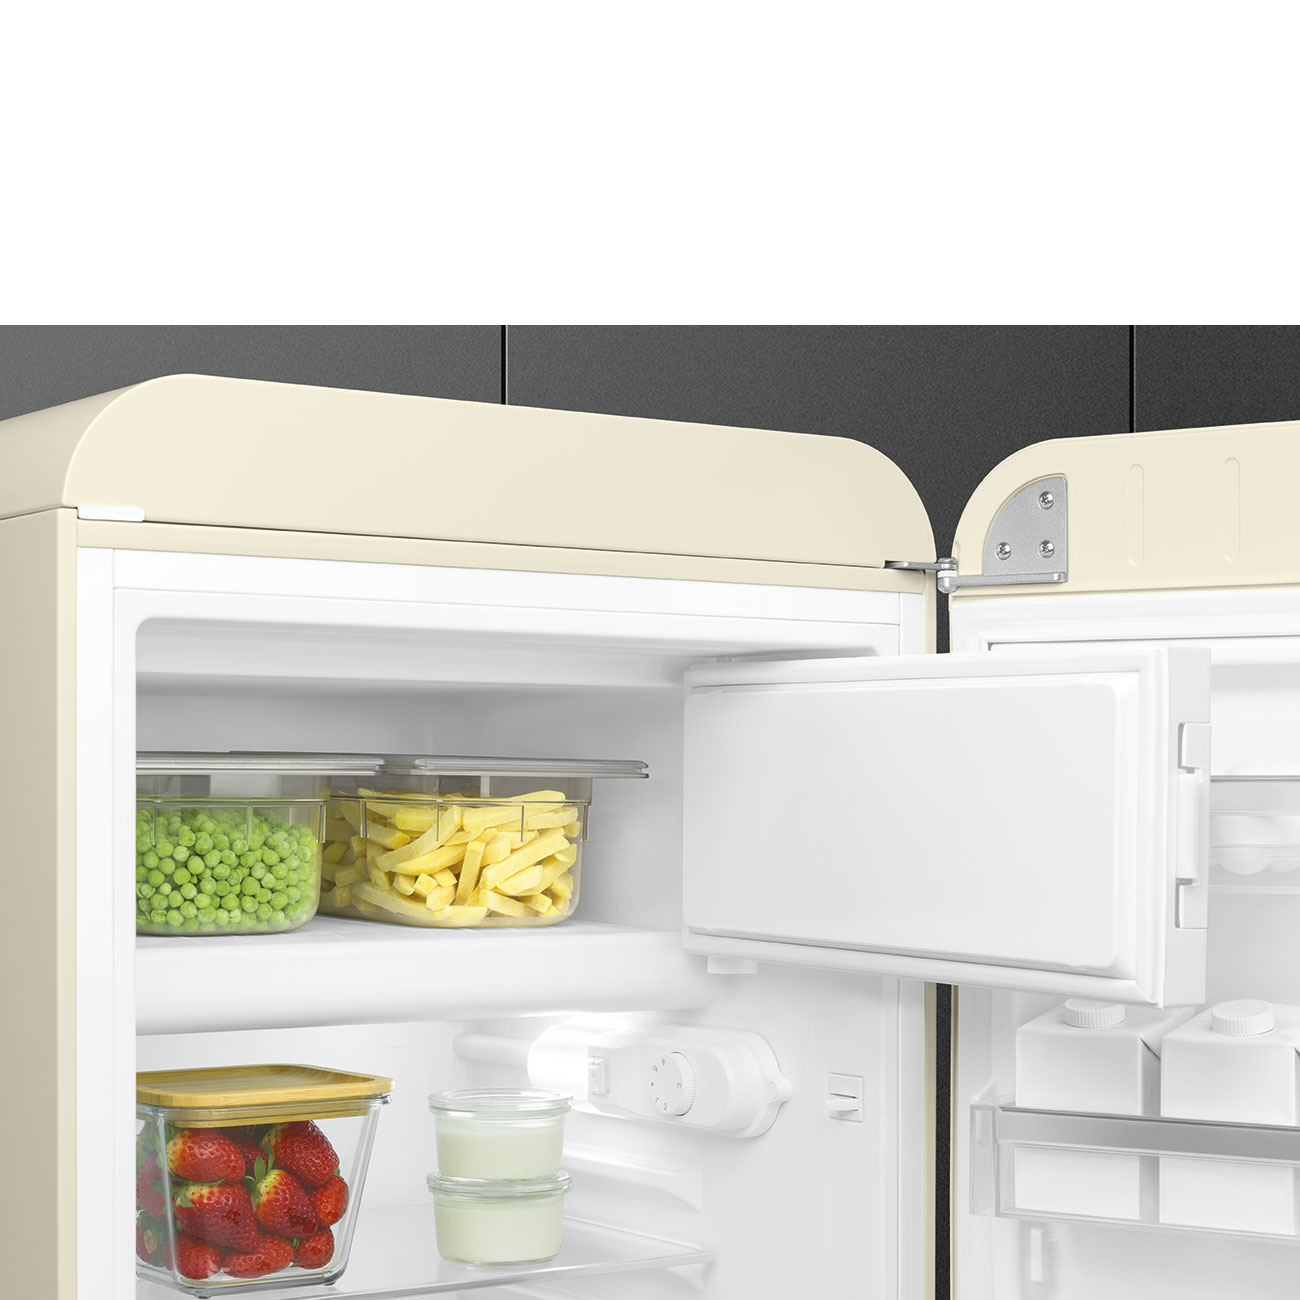 Cream refrigerator - Smeg_10